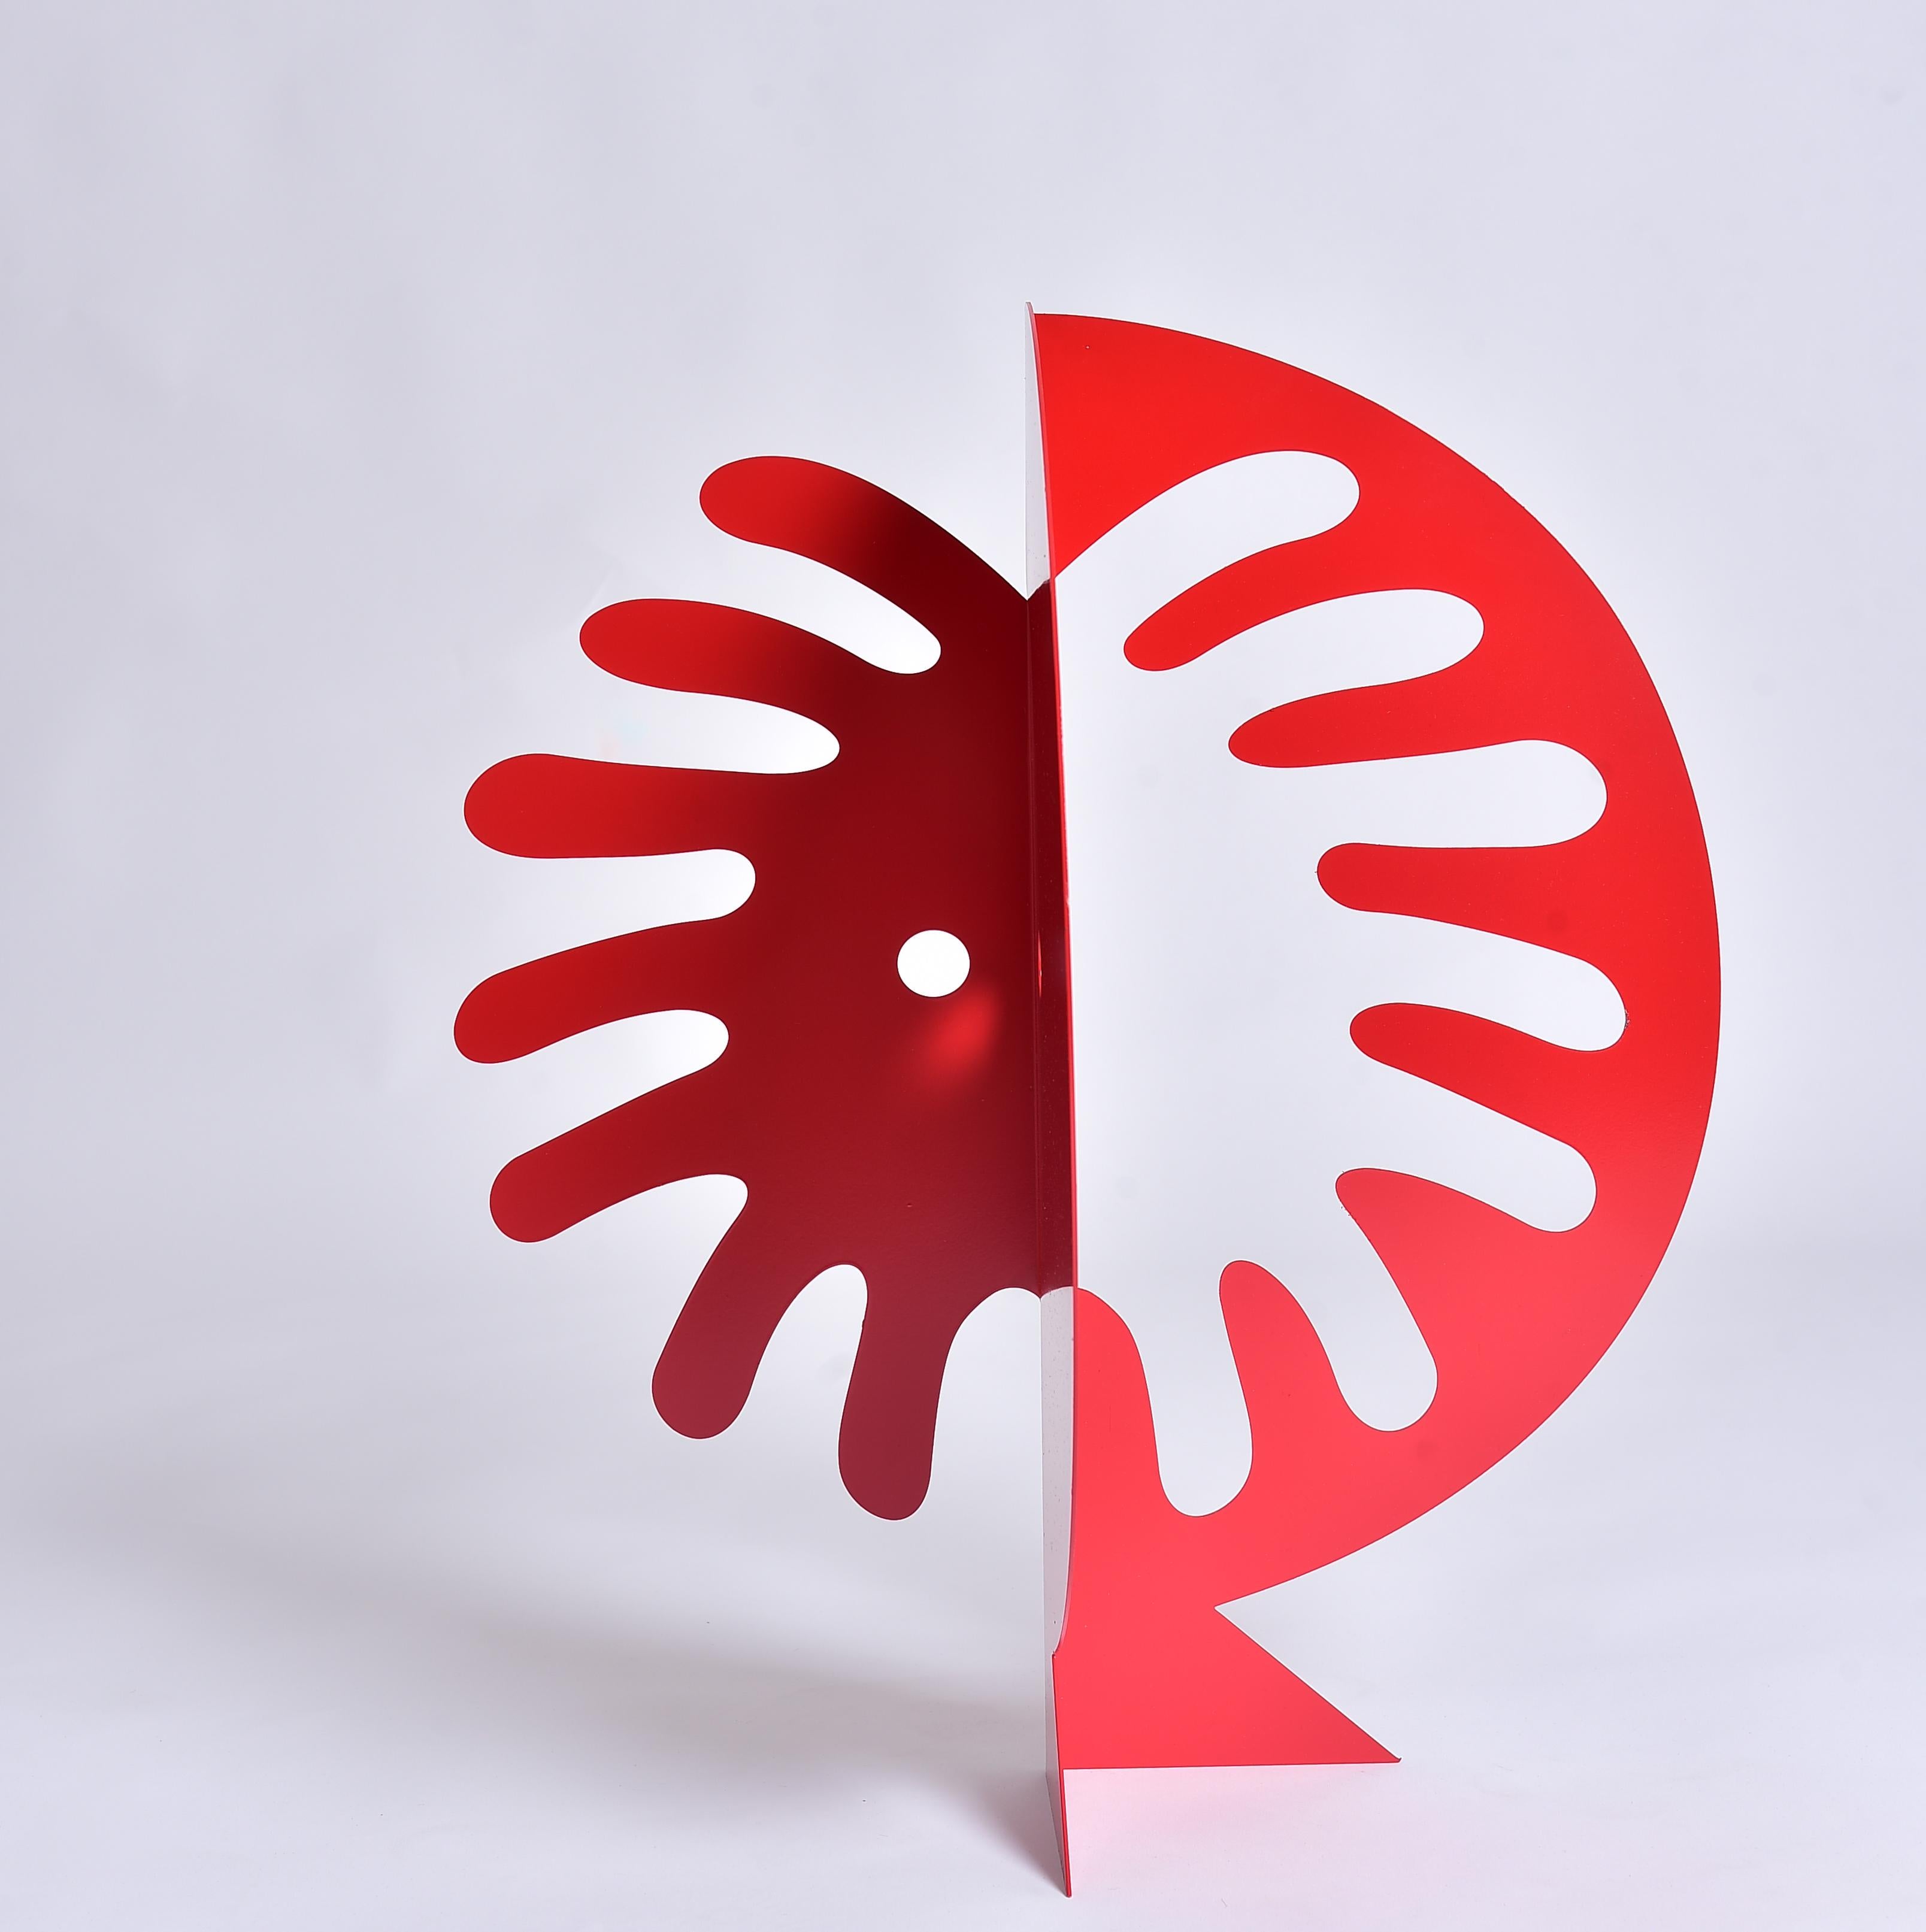 Abstract Sculpture de Gal Melnick - Sol Rojo - escultura figurativa abstracta